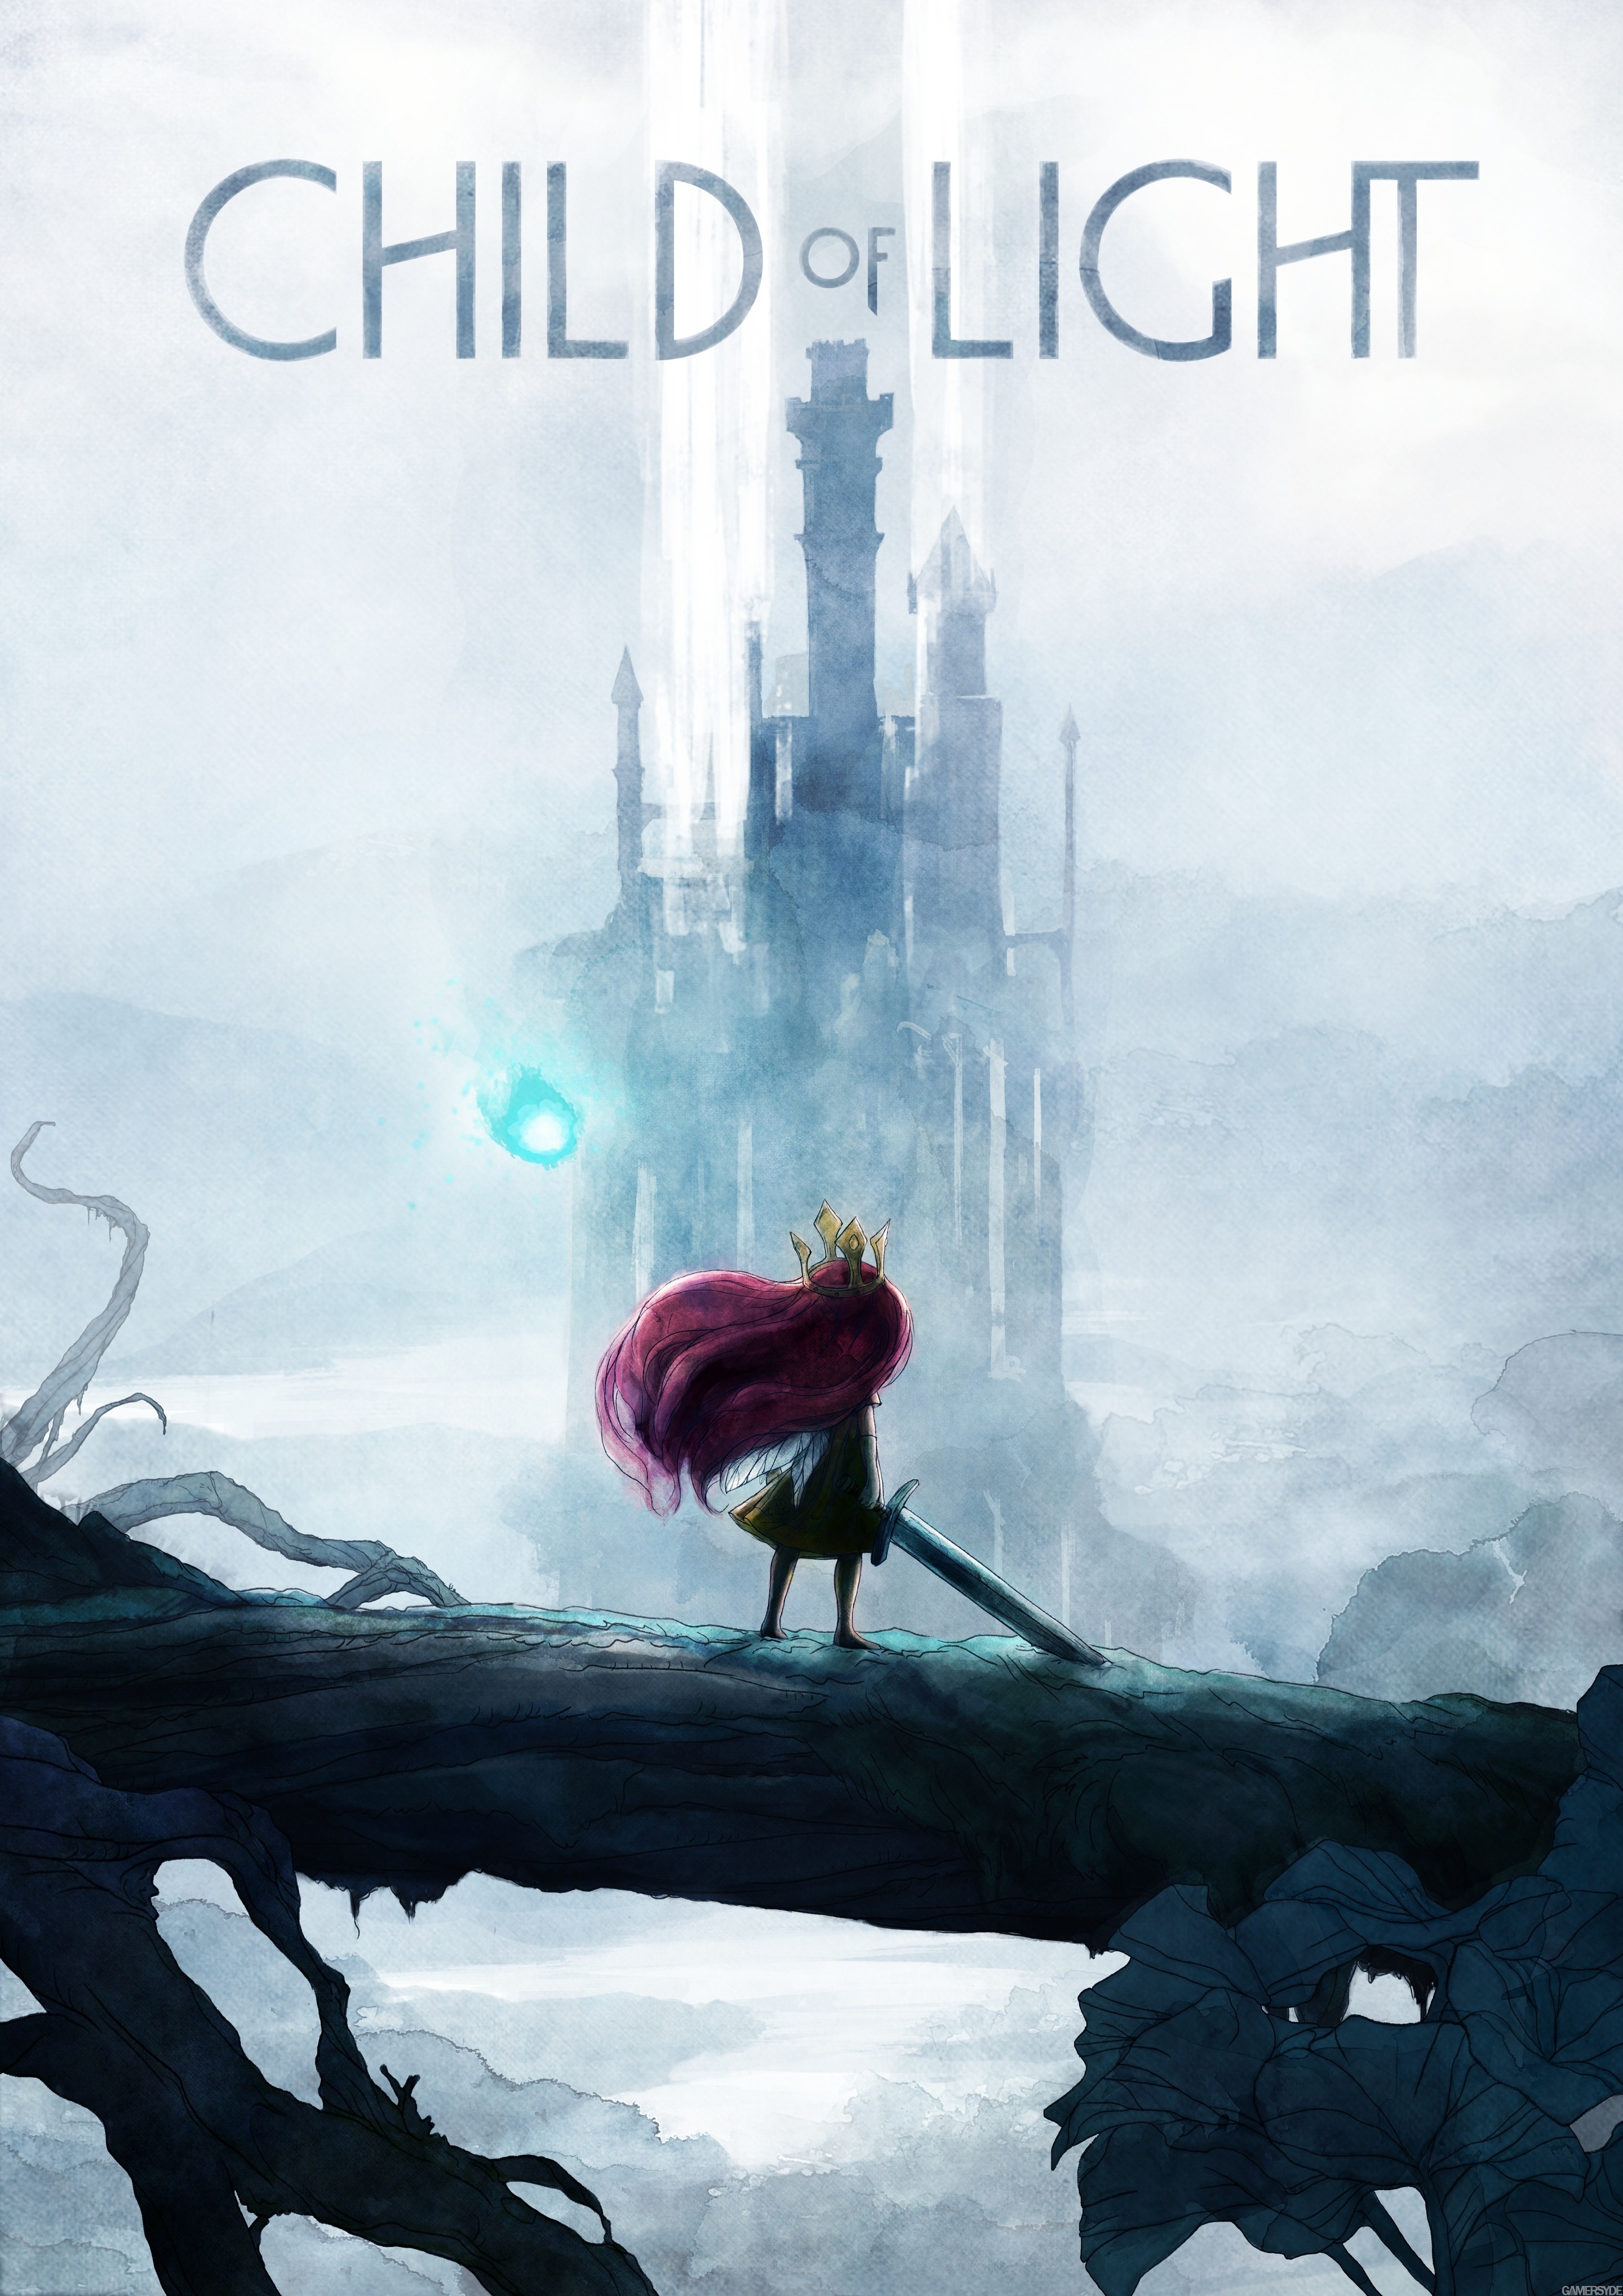 wrijving Verdorie nederlaag Child of Light review | GamesRadar+